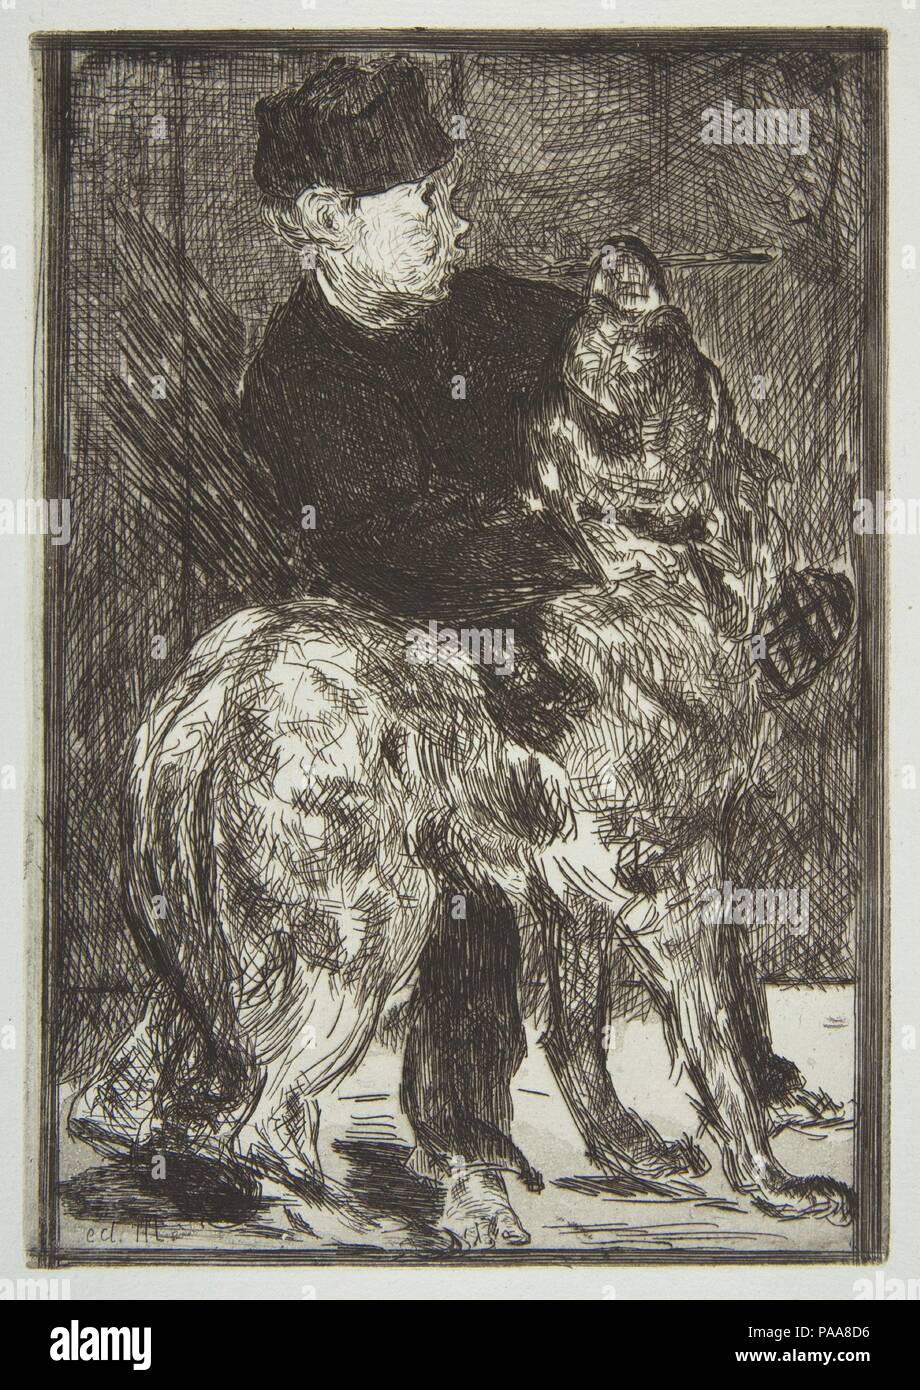 Ragazzo e cane. Artista: Édouard Manet (francese, Parigi Parigi 1832-1883). Dimensioni: piastra: 8 x 5 9/16a. (20,3 x 14,1 cm) foglio: 14 1/2 x 9 1/2 in. (36,8 x 24.1cm). Serie/Portfolio: Strölin edizione del 1905. Data: 1862. Museo: Metropolitan Museum of Art di New York, Stati Uniti d'America. Foto Stock